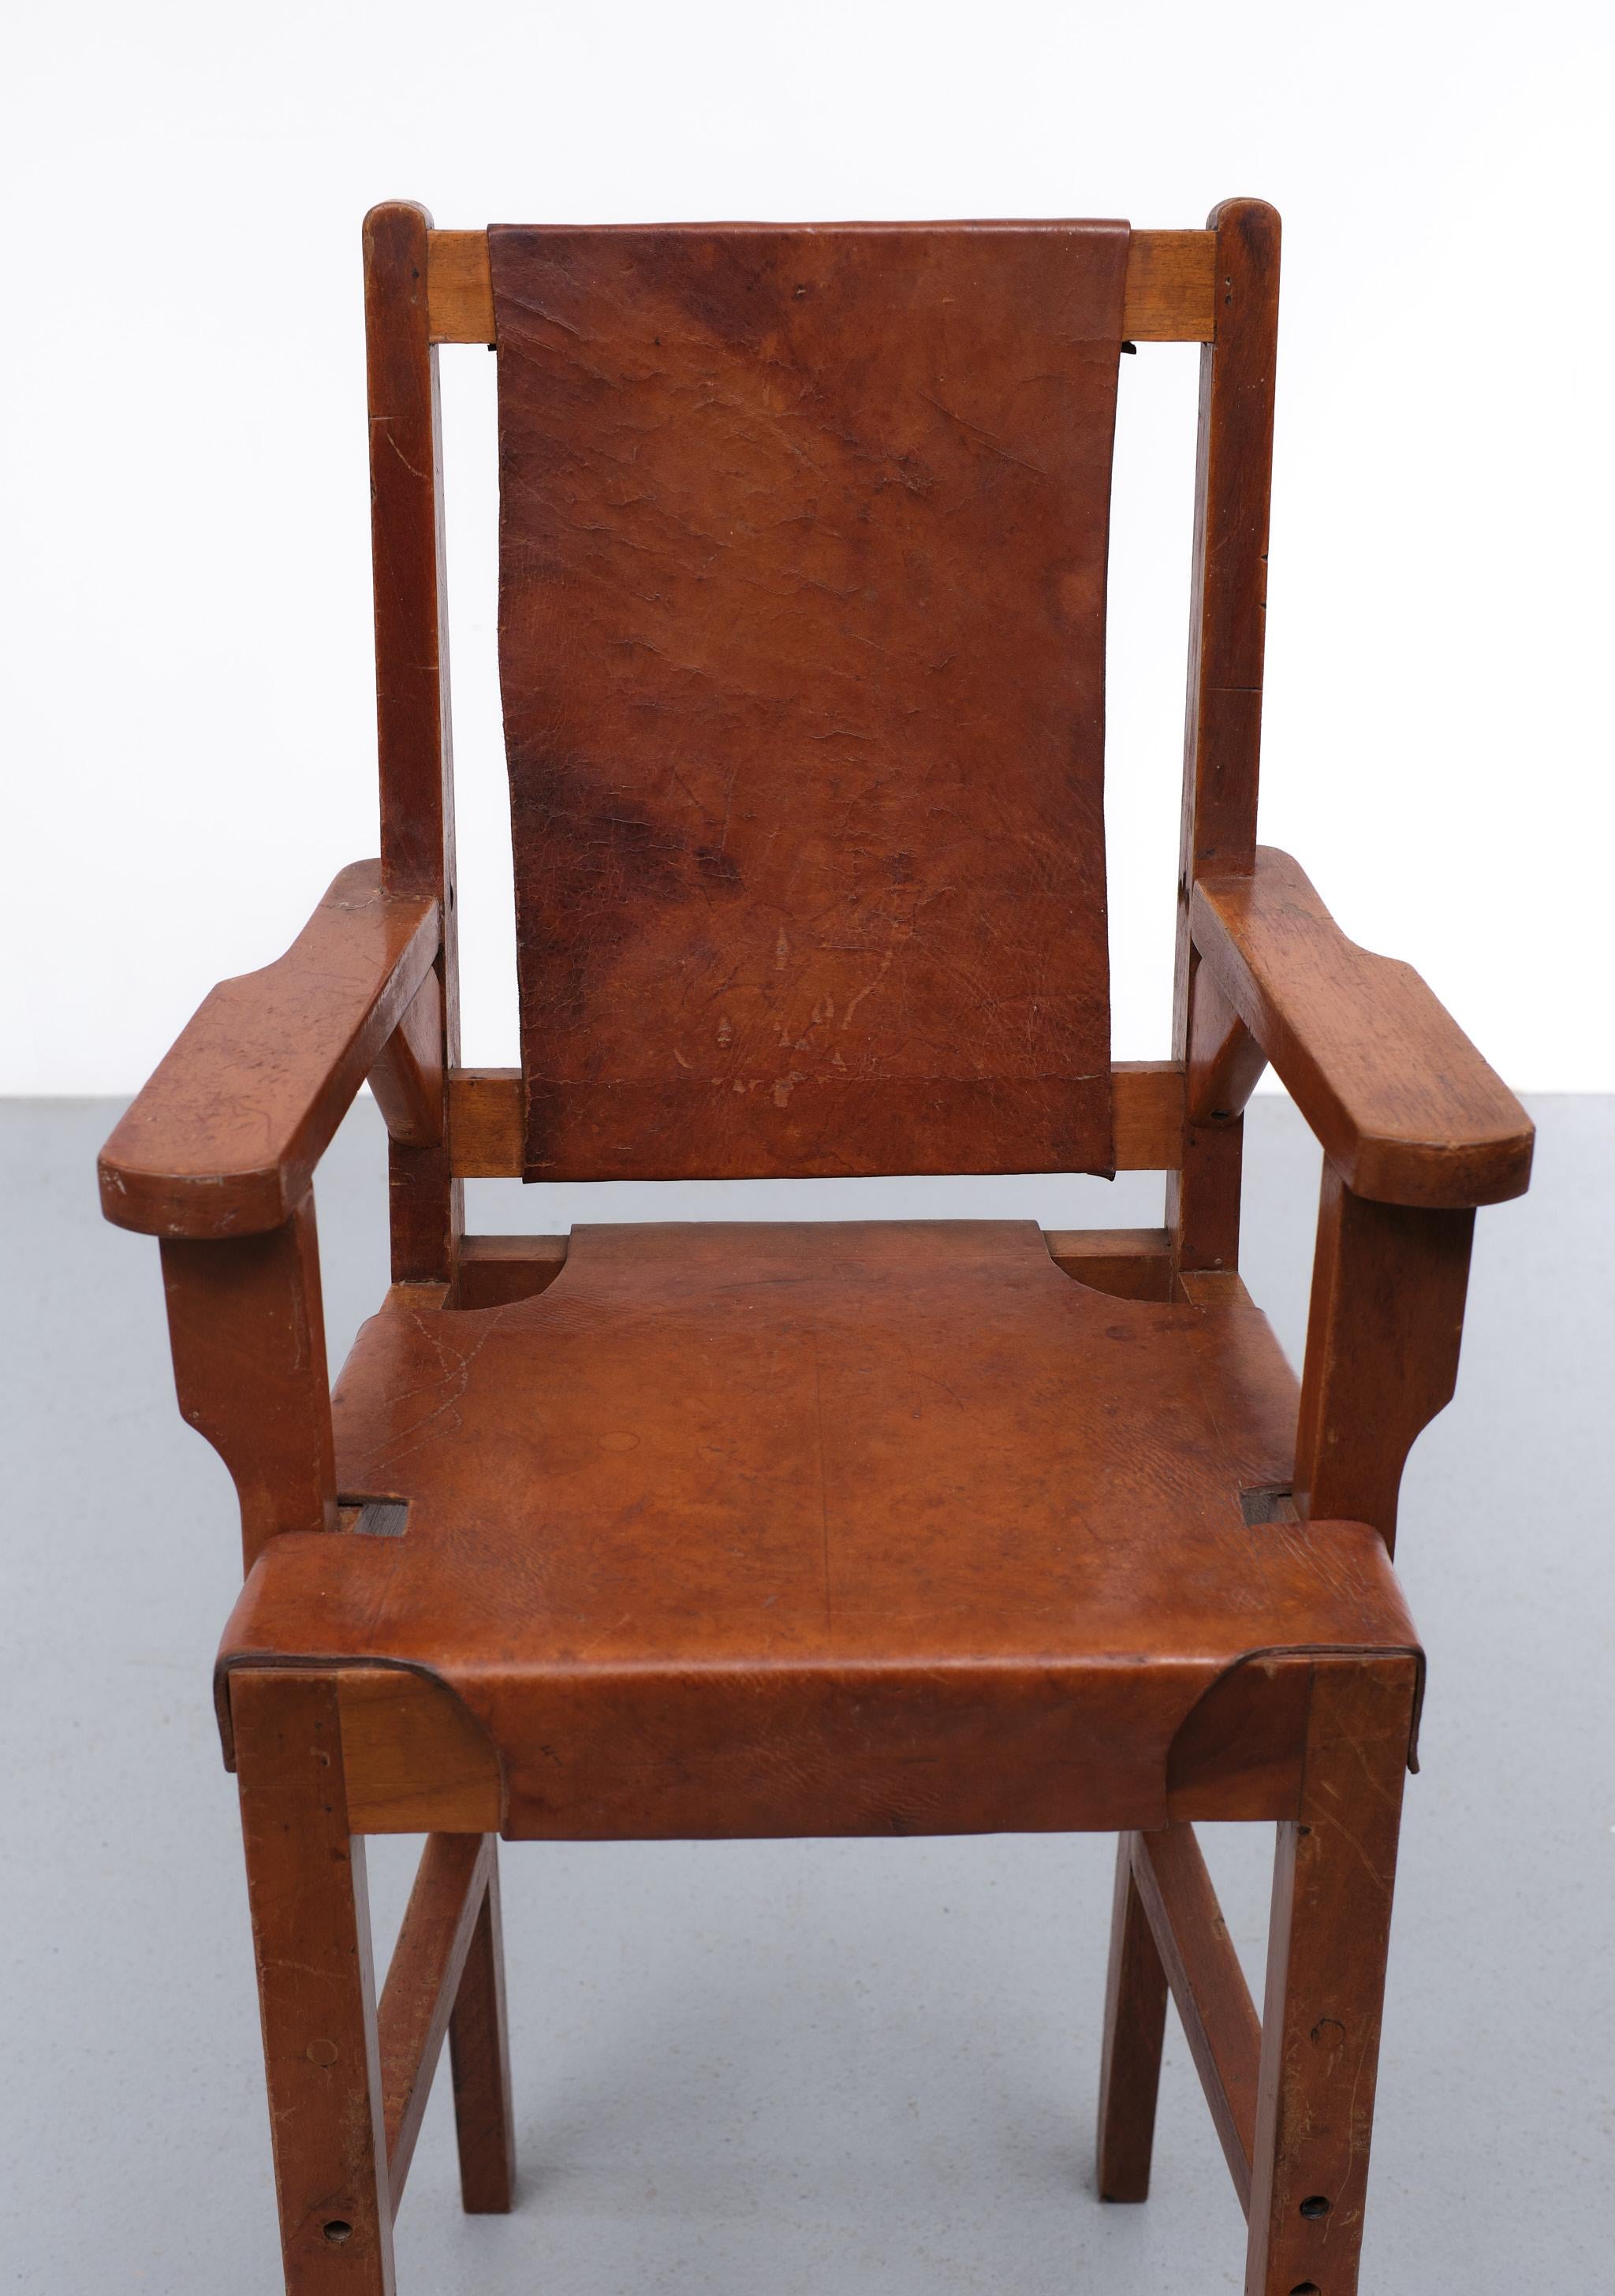 1940s high chair